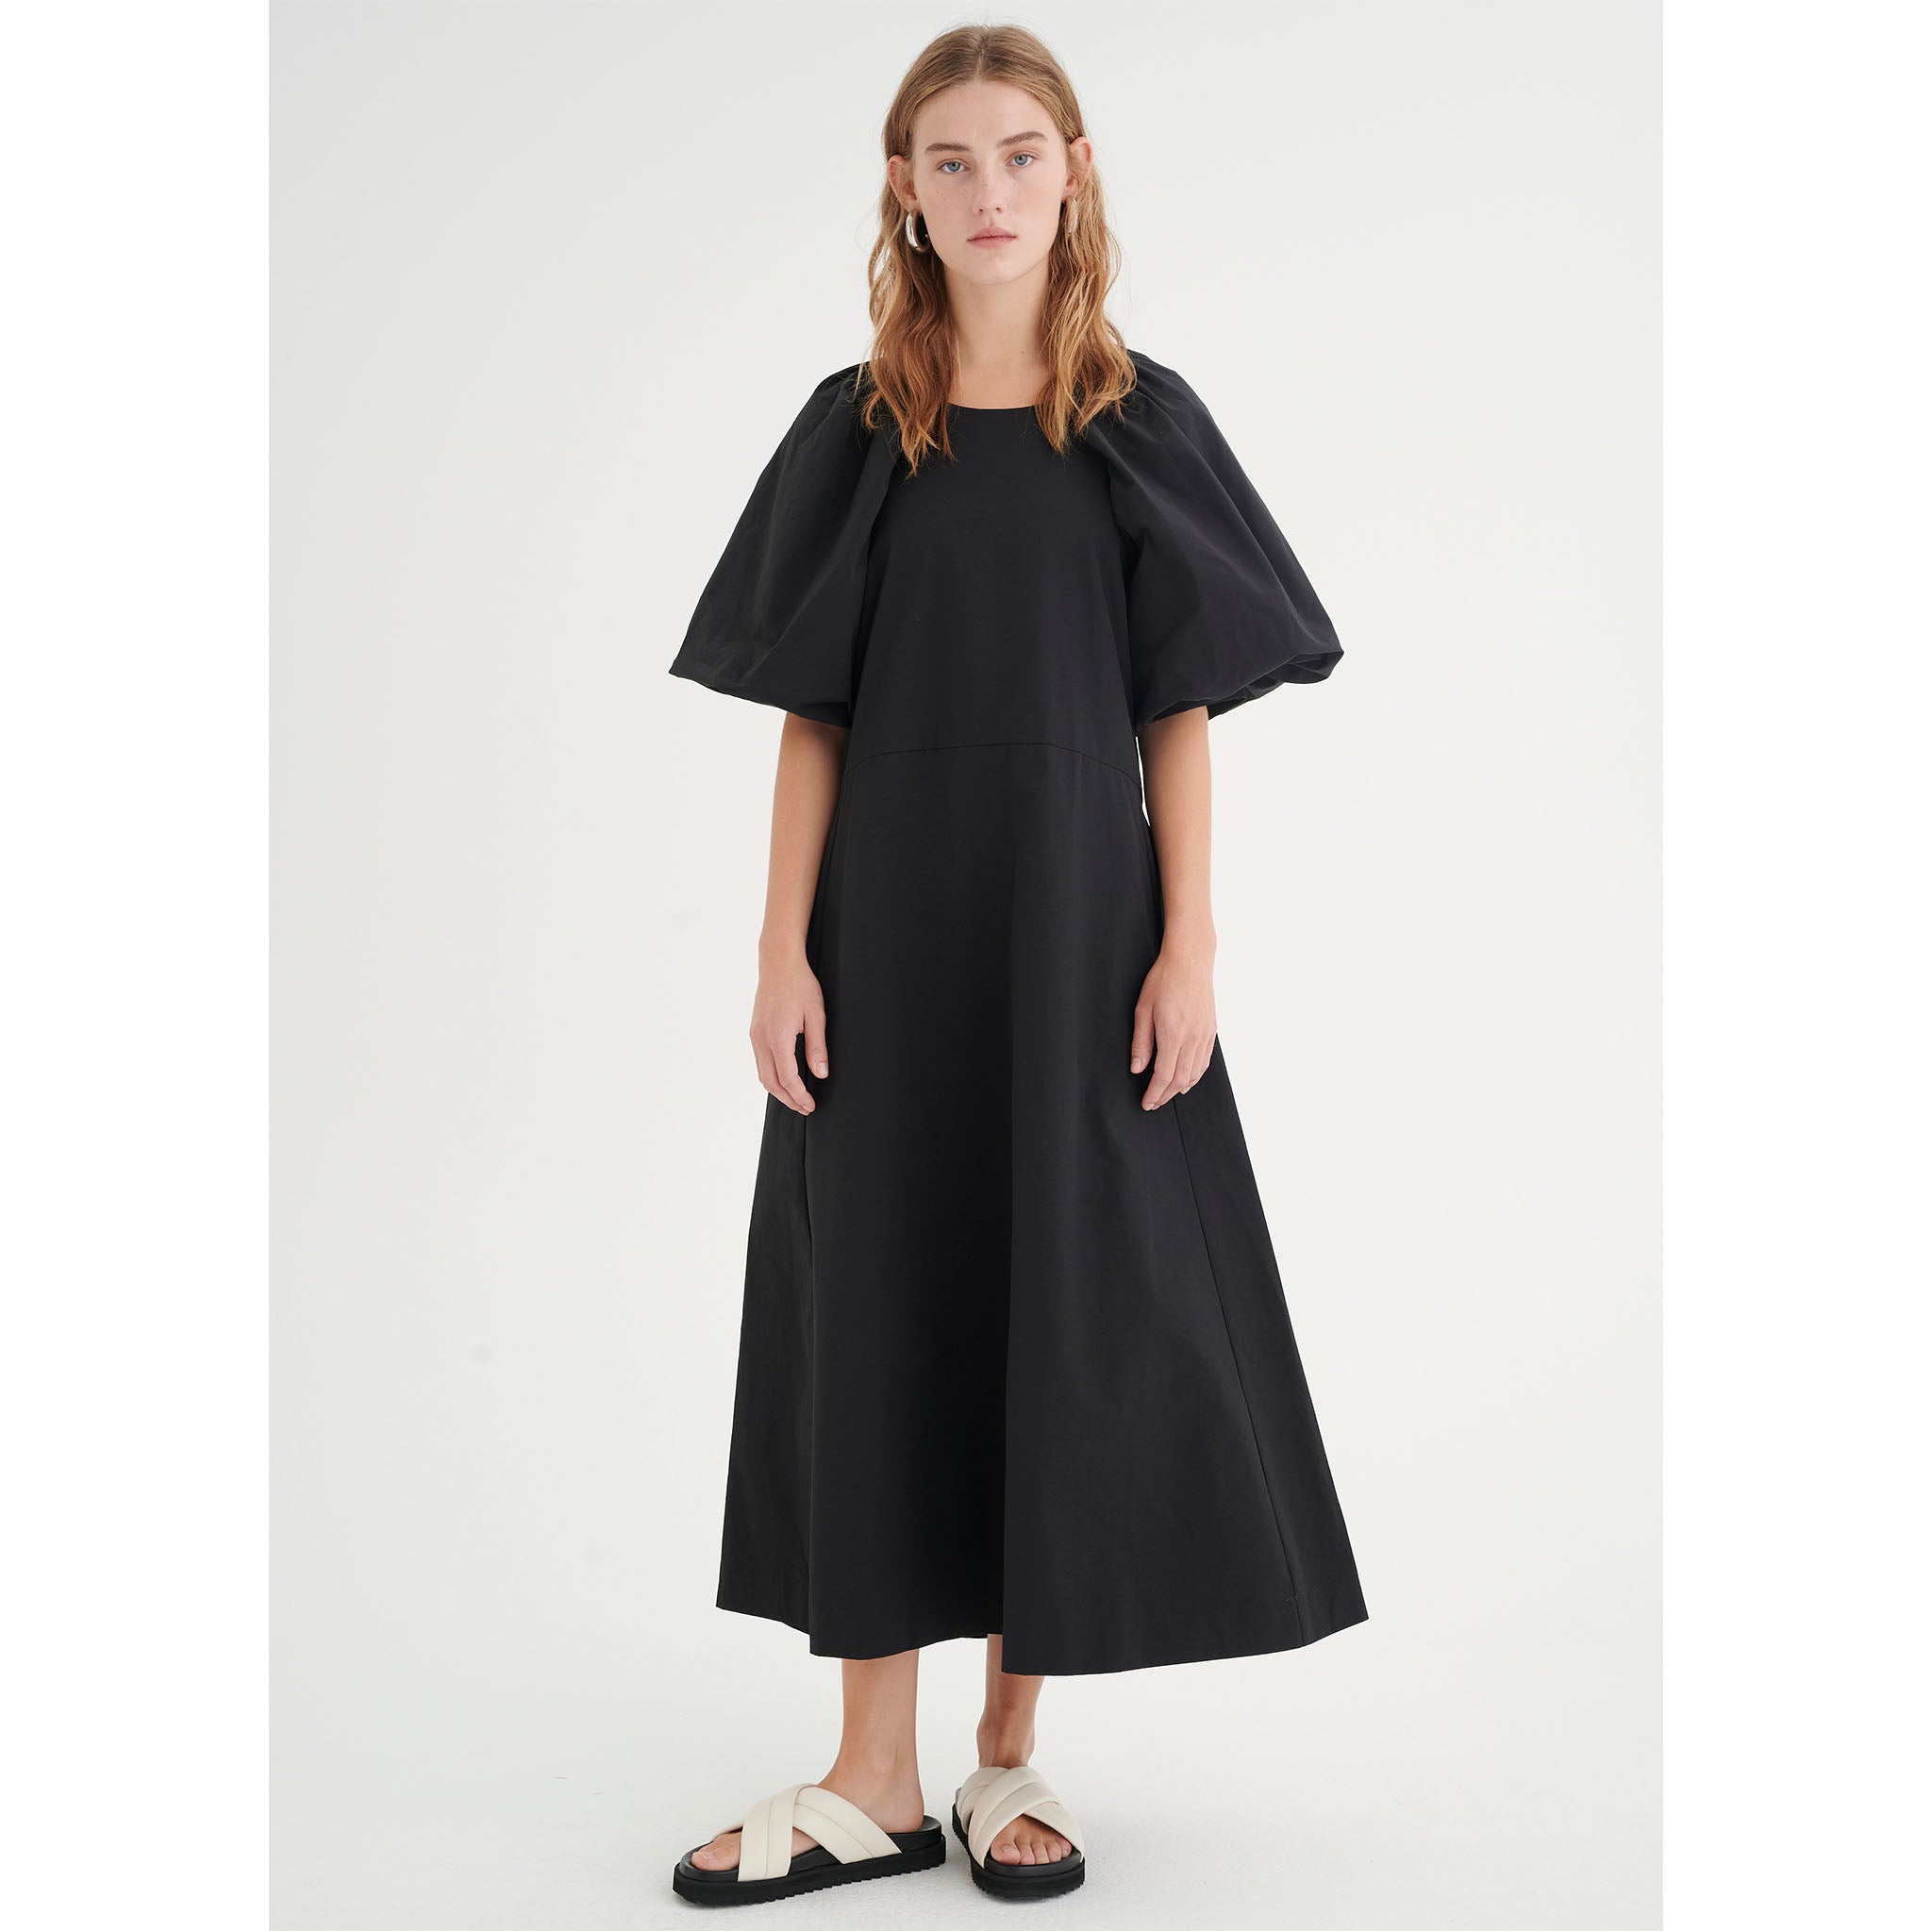 In Wearin musta, näyttävä mekko. Suuret puhvihihat ja A-linjainen malli. Etukuva mallin päällä.